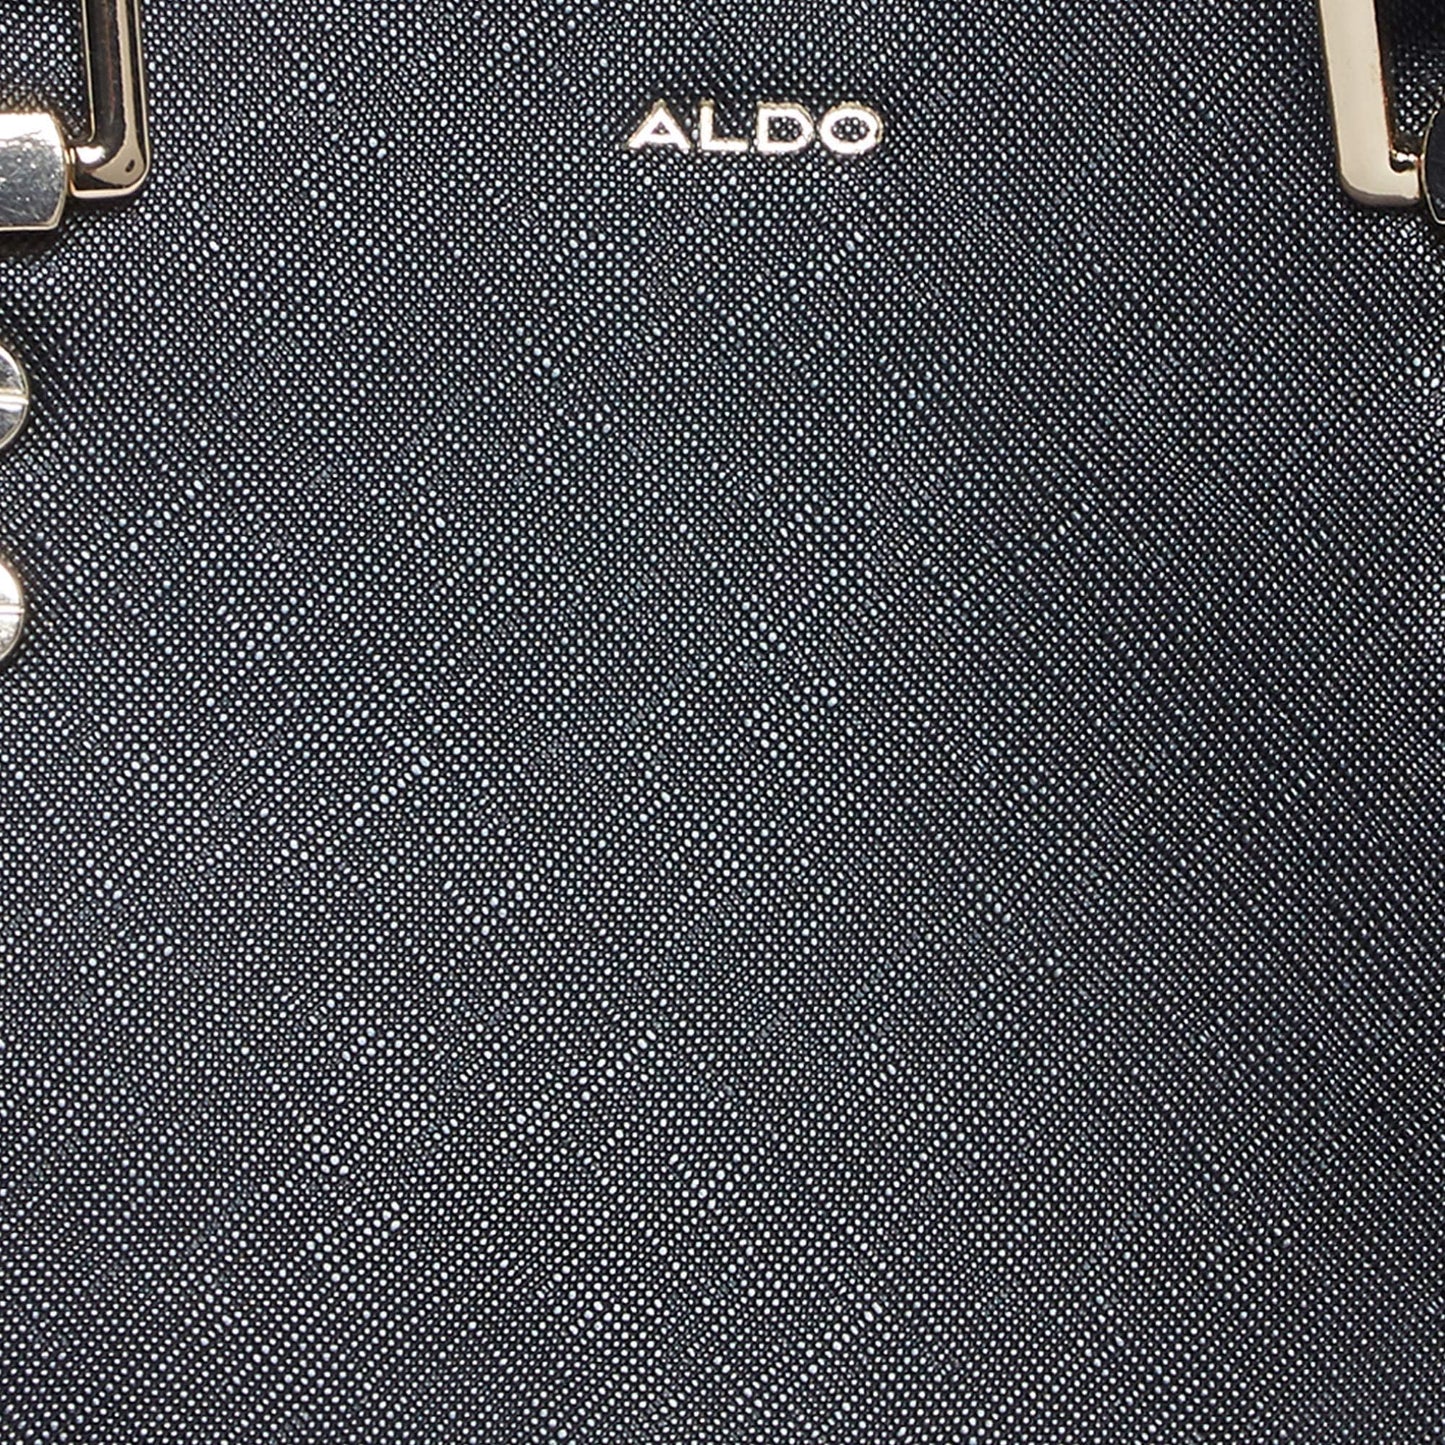 Aldo Women's Handbag (Black) 